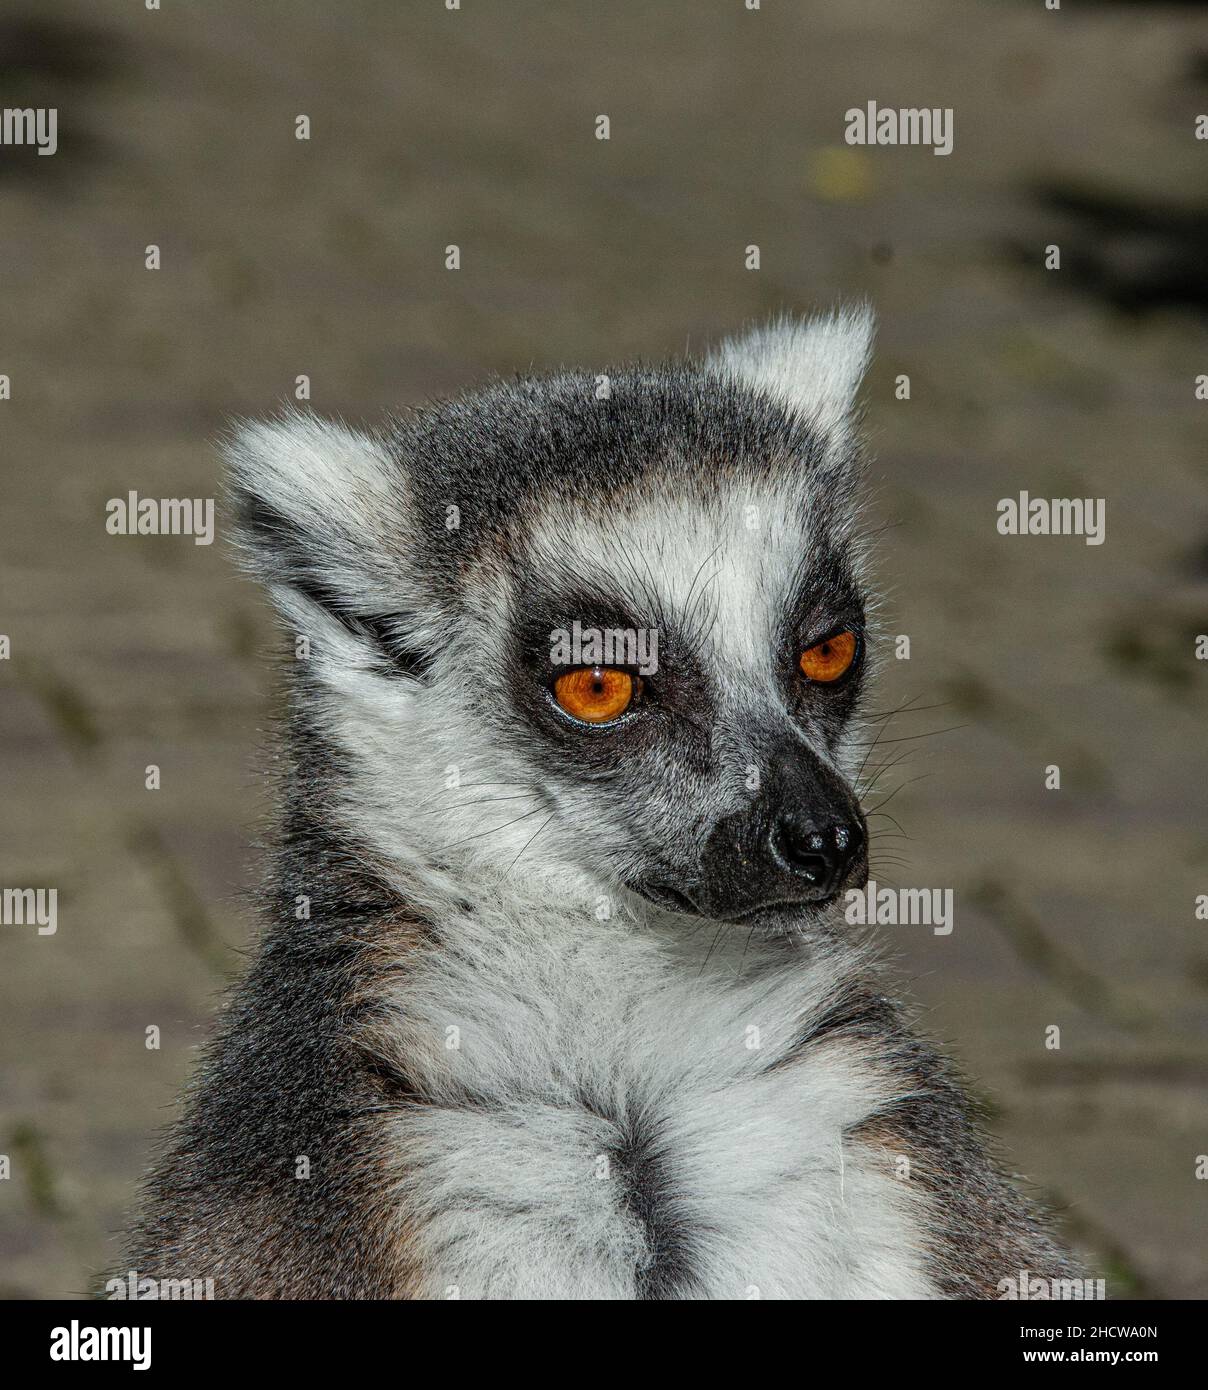 Scimmia Lemur a coda di rondine con occhi arancioni in uno zoo Foto Stock